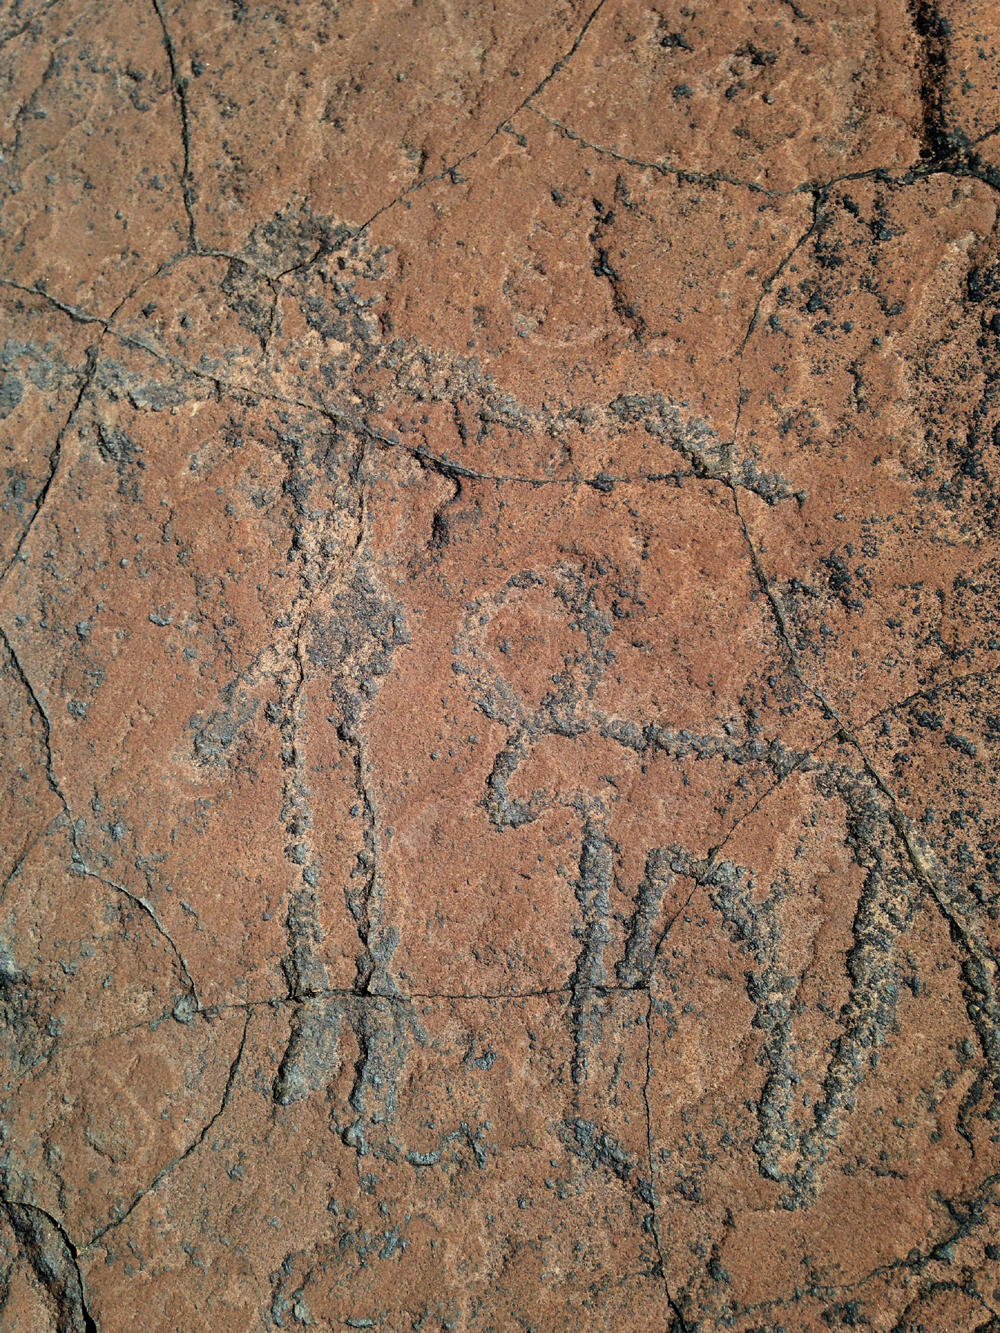 Rock engravings in Morocco